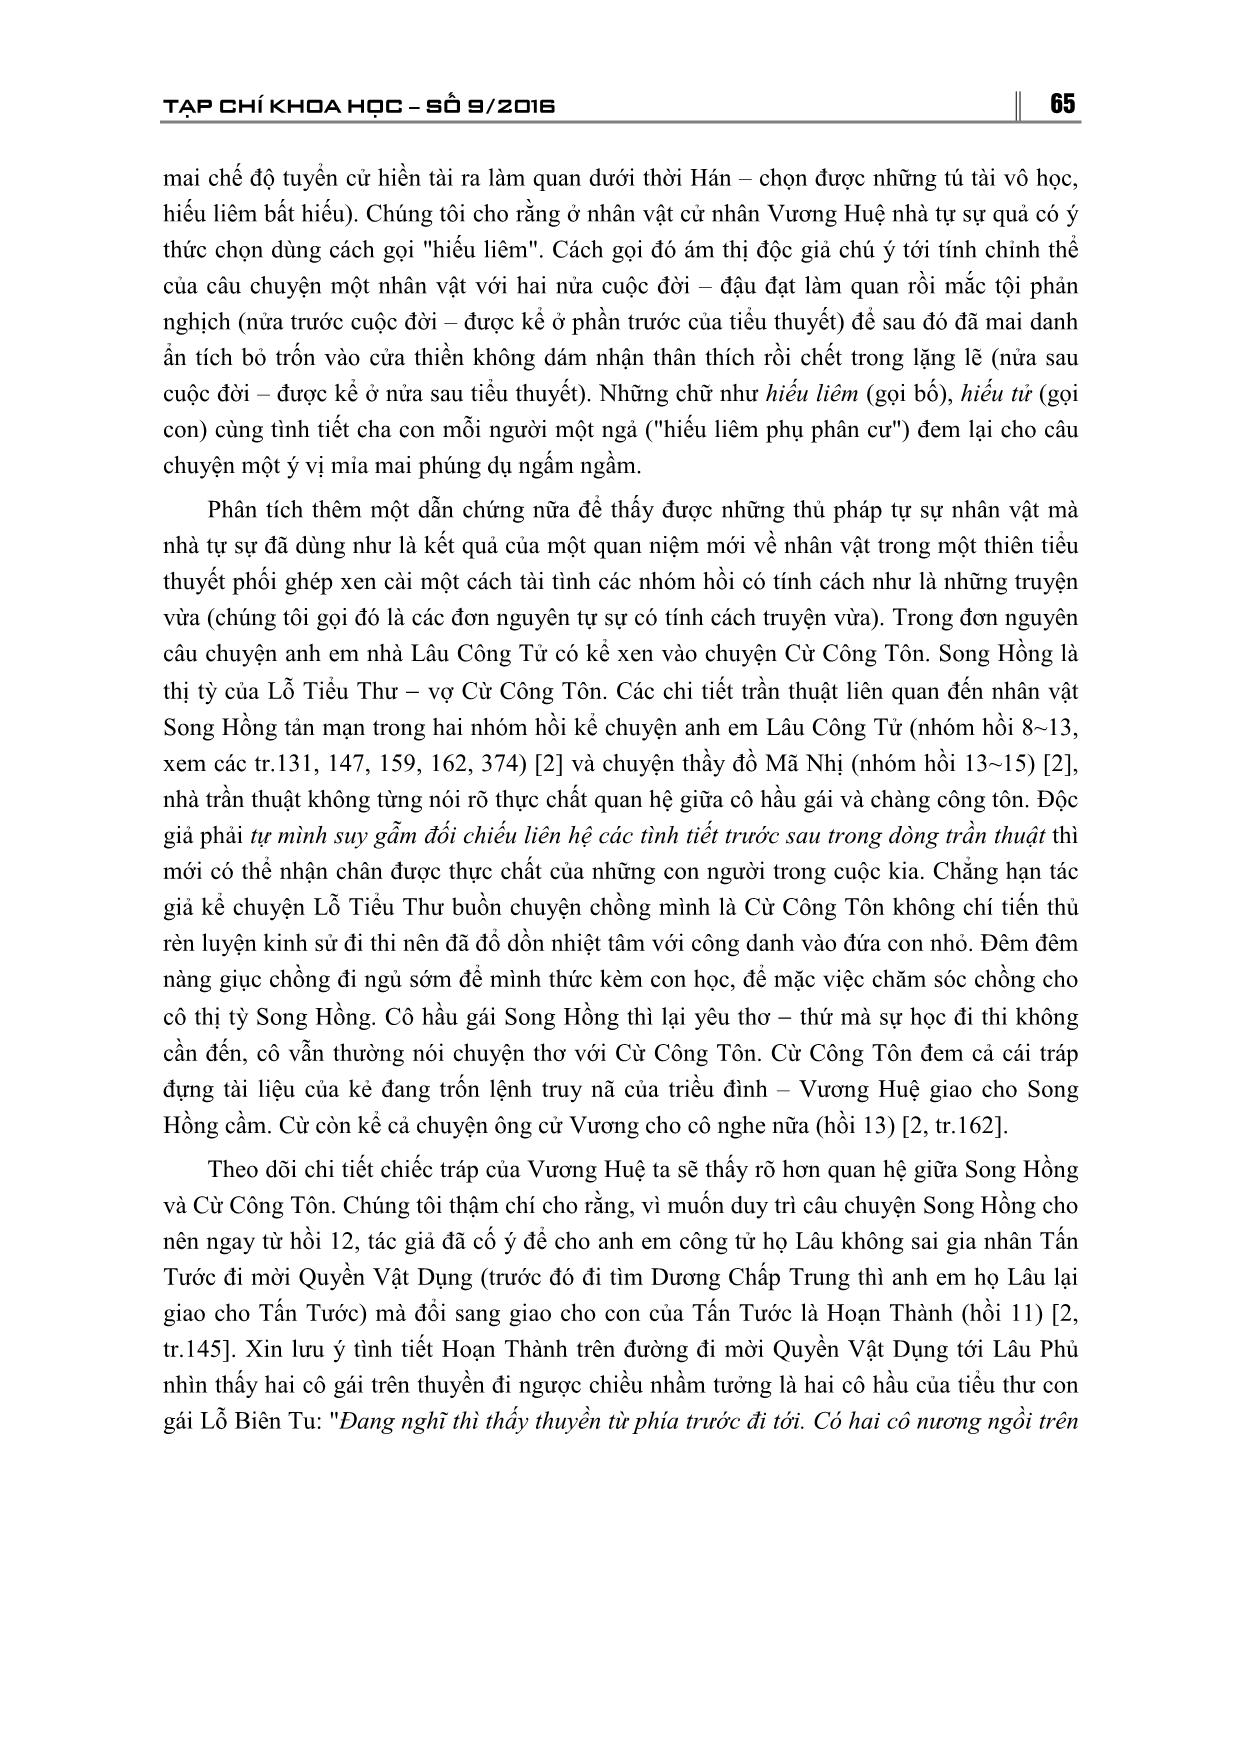 Thủ pháp tự sự mới về nhân vật của Nho Lâm Ngoại Sử và việc tái thức nhận chủ đề cuốn tiểu thuyết trang 4